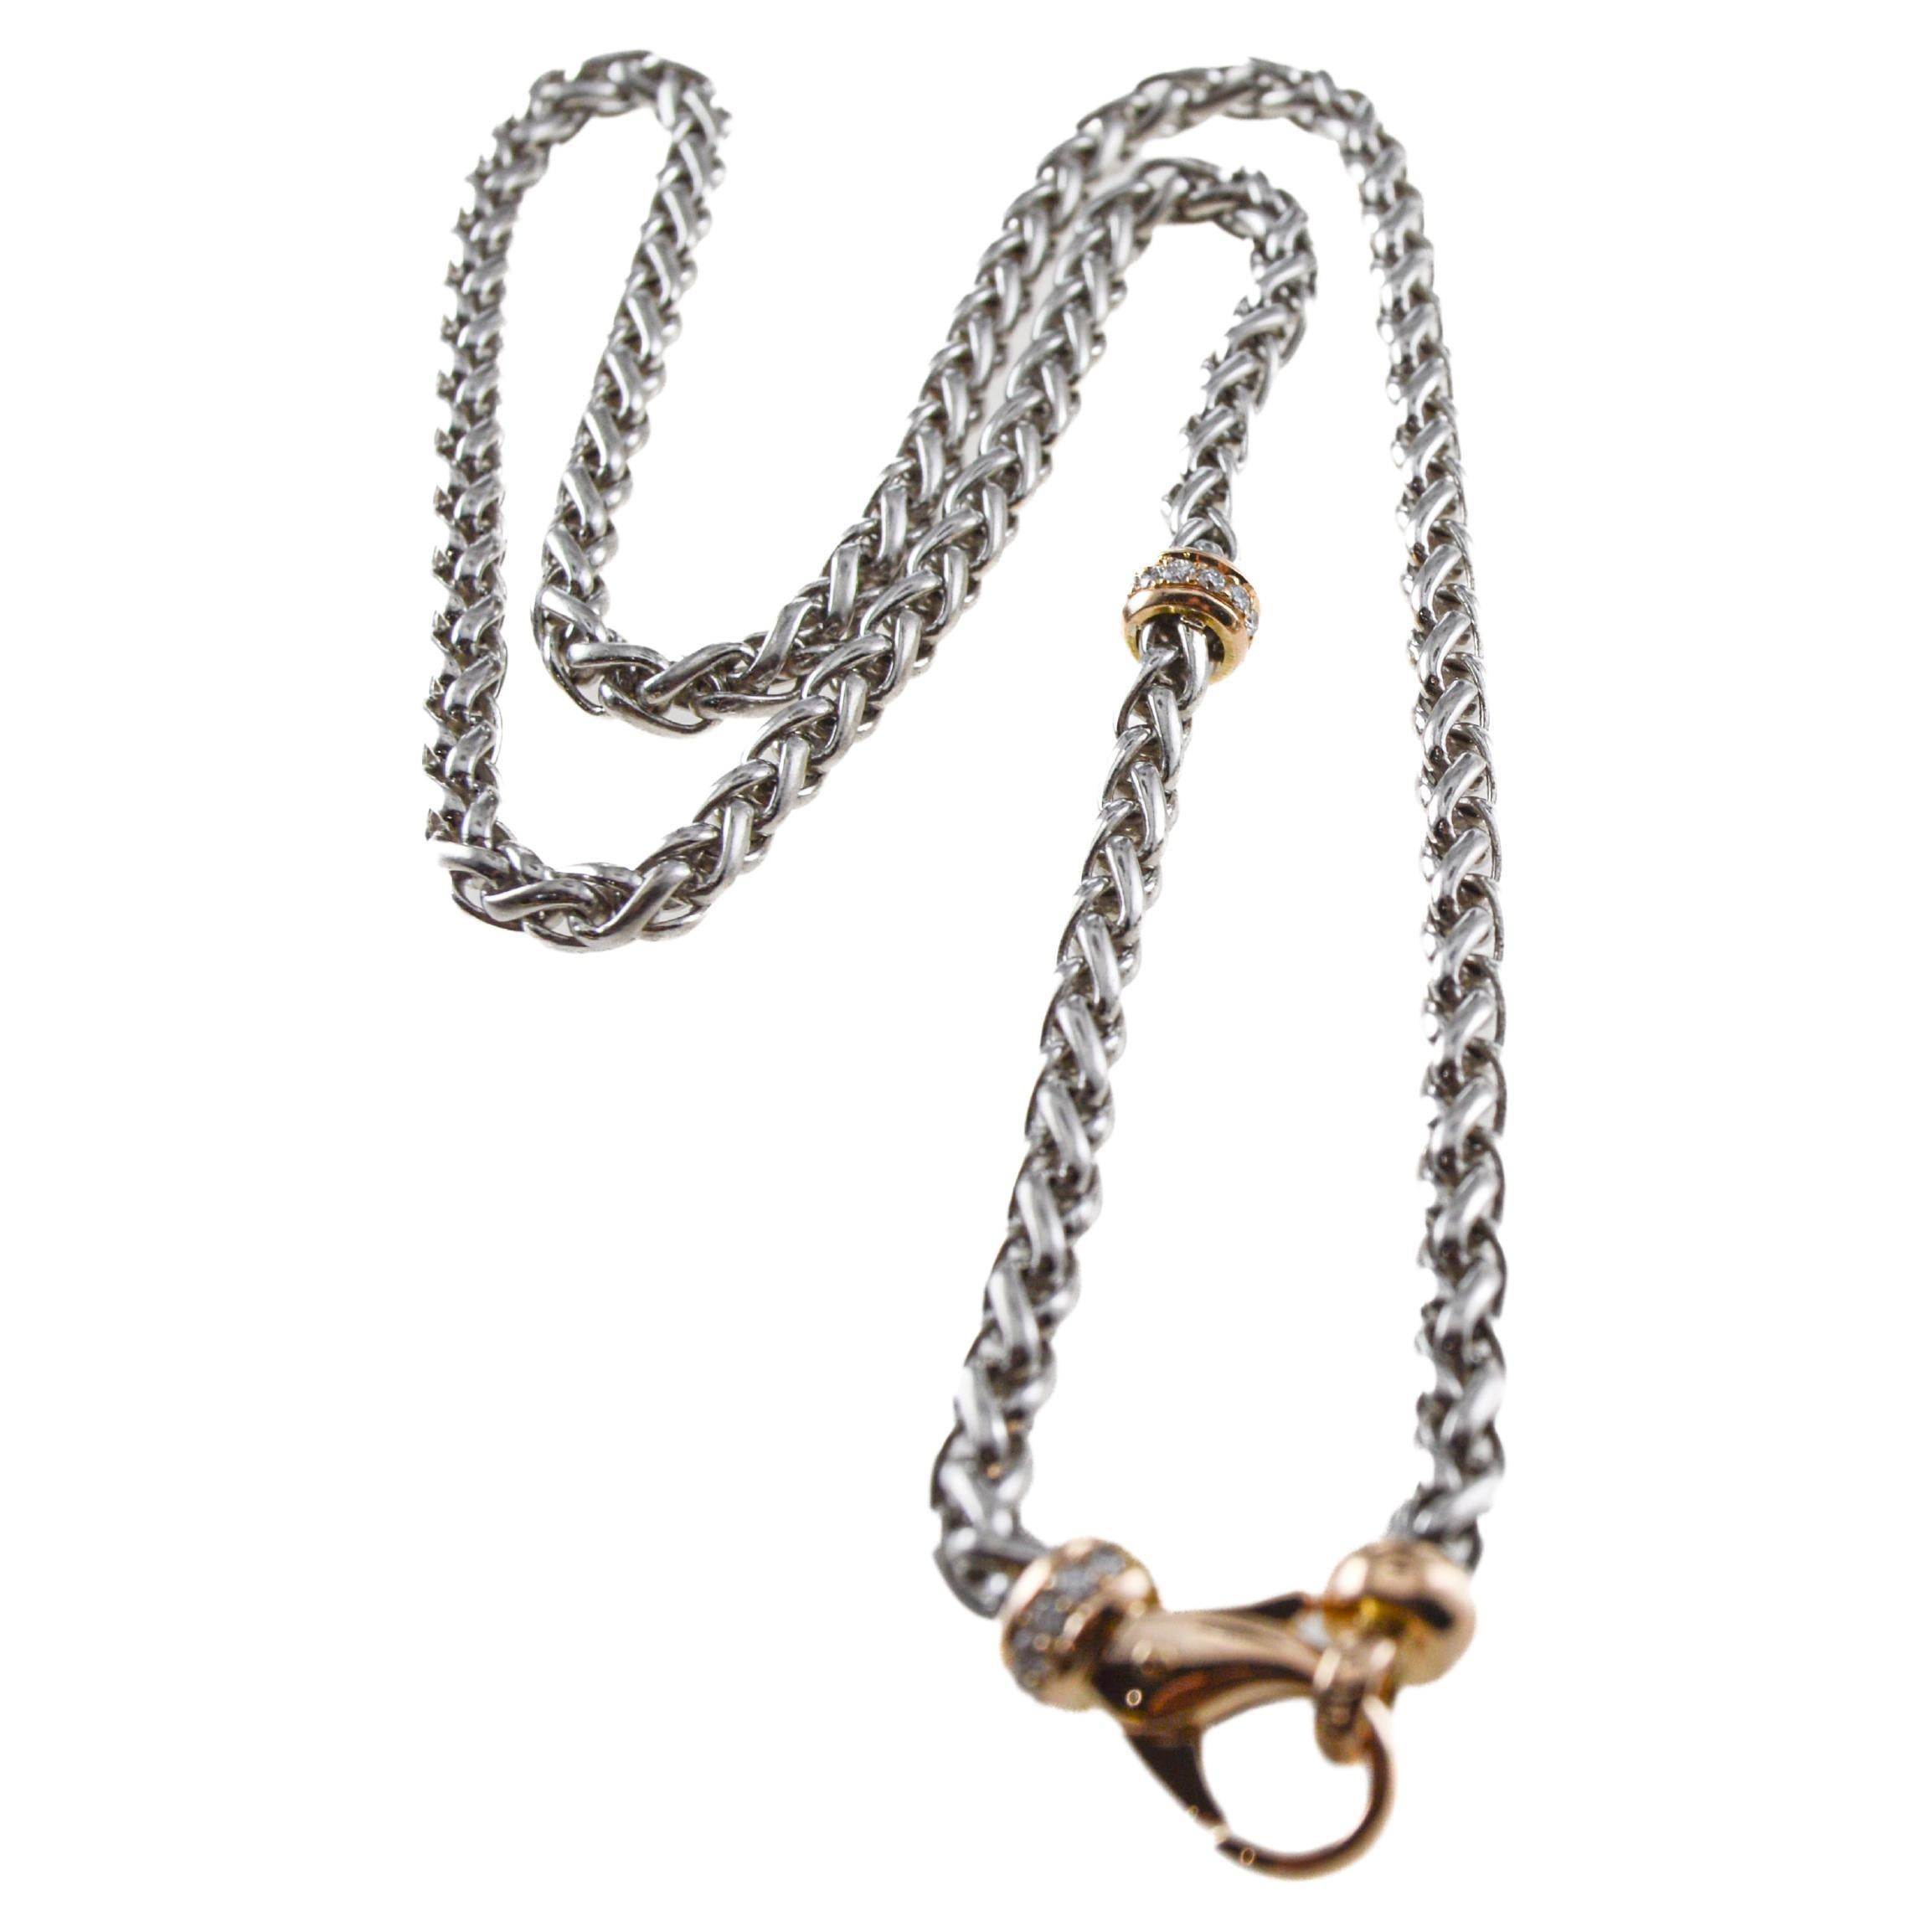 Dies ist eine großartig aussehende handgefertigte Halskette, ein Armband oder eine Taschenuhrkette.  Jedes Glied ist von Hand geflochten. Die Glieder sind aus Platin und der Dreh- und Federring aus Gelbgold mit Diamanten.  Wir haben diese Kette noch